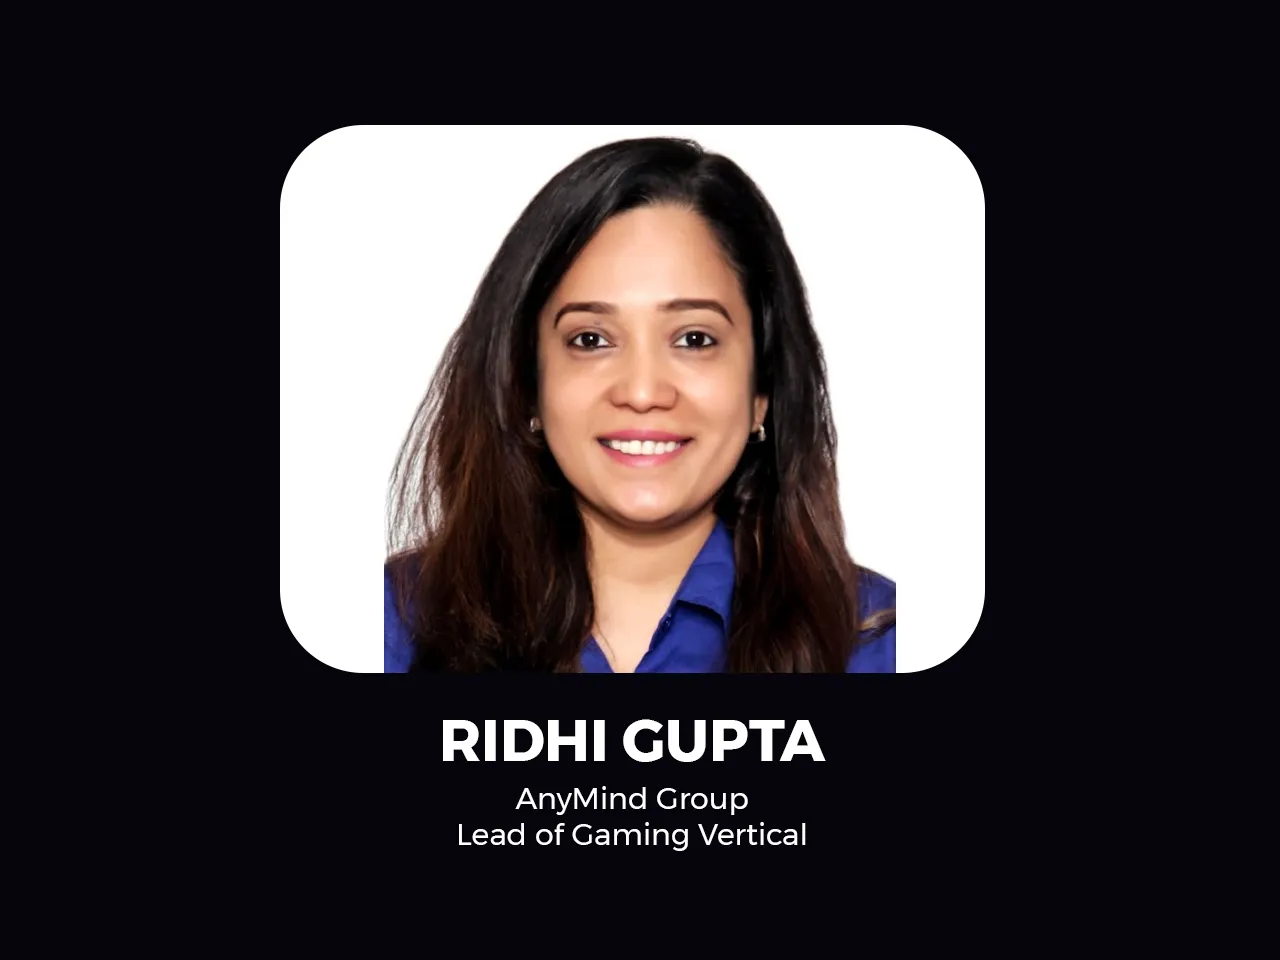 Ridhi Gupta